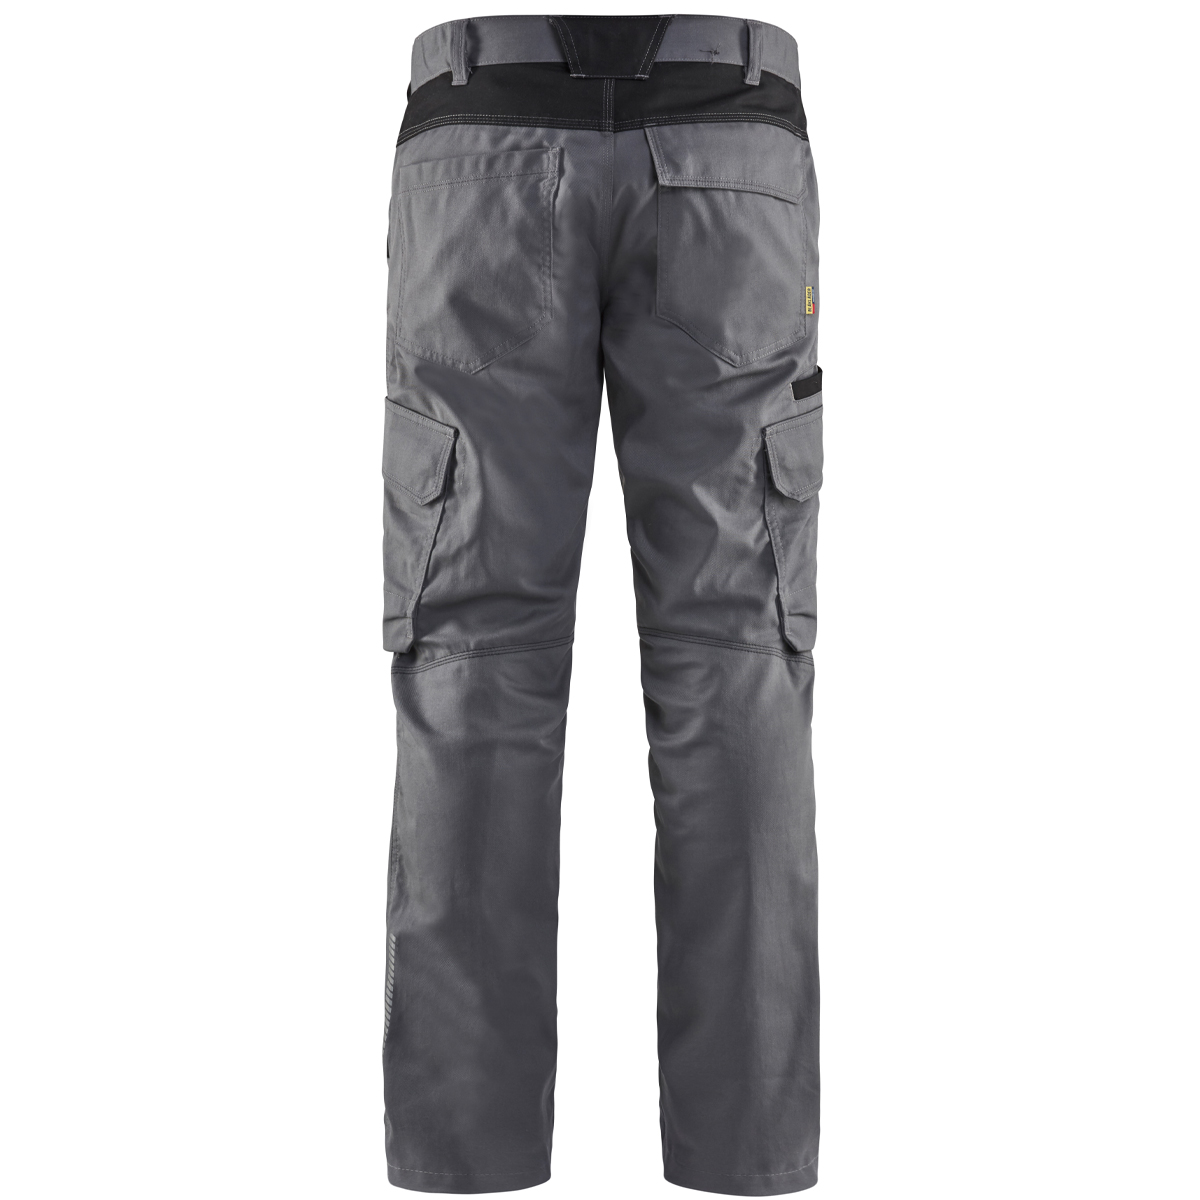 Blakläder industrial work trousers with stretch